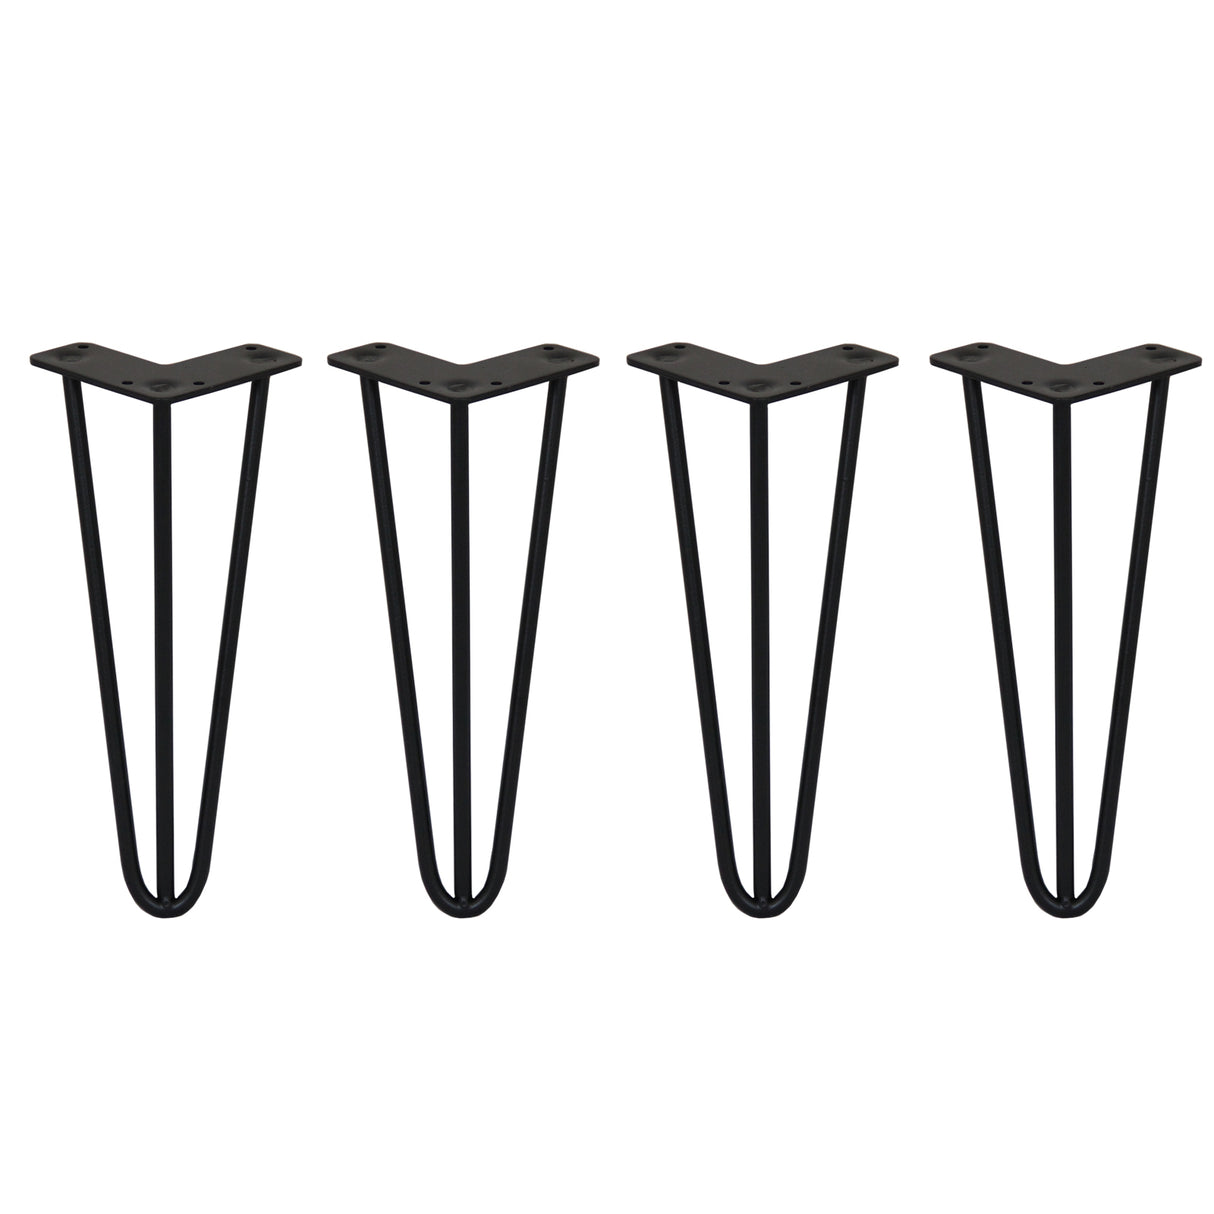 4 Pieds de Table en Épingle à Cheveux - 30,5cm - 3 Tiges - 10mm – Fini Noir